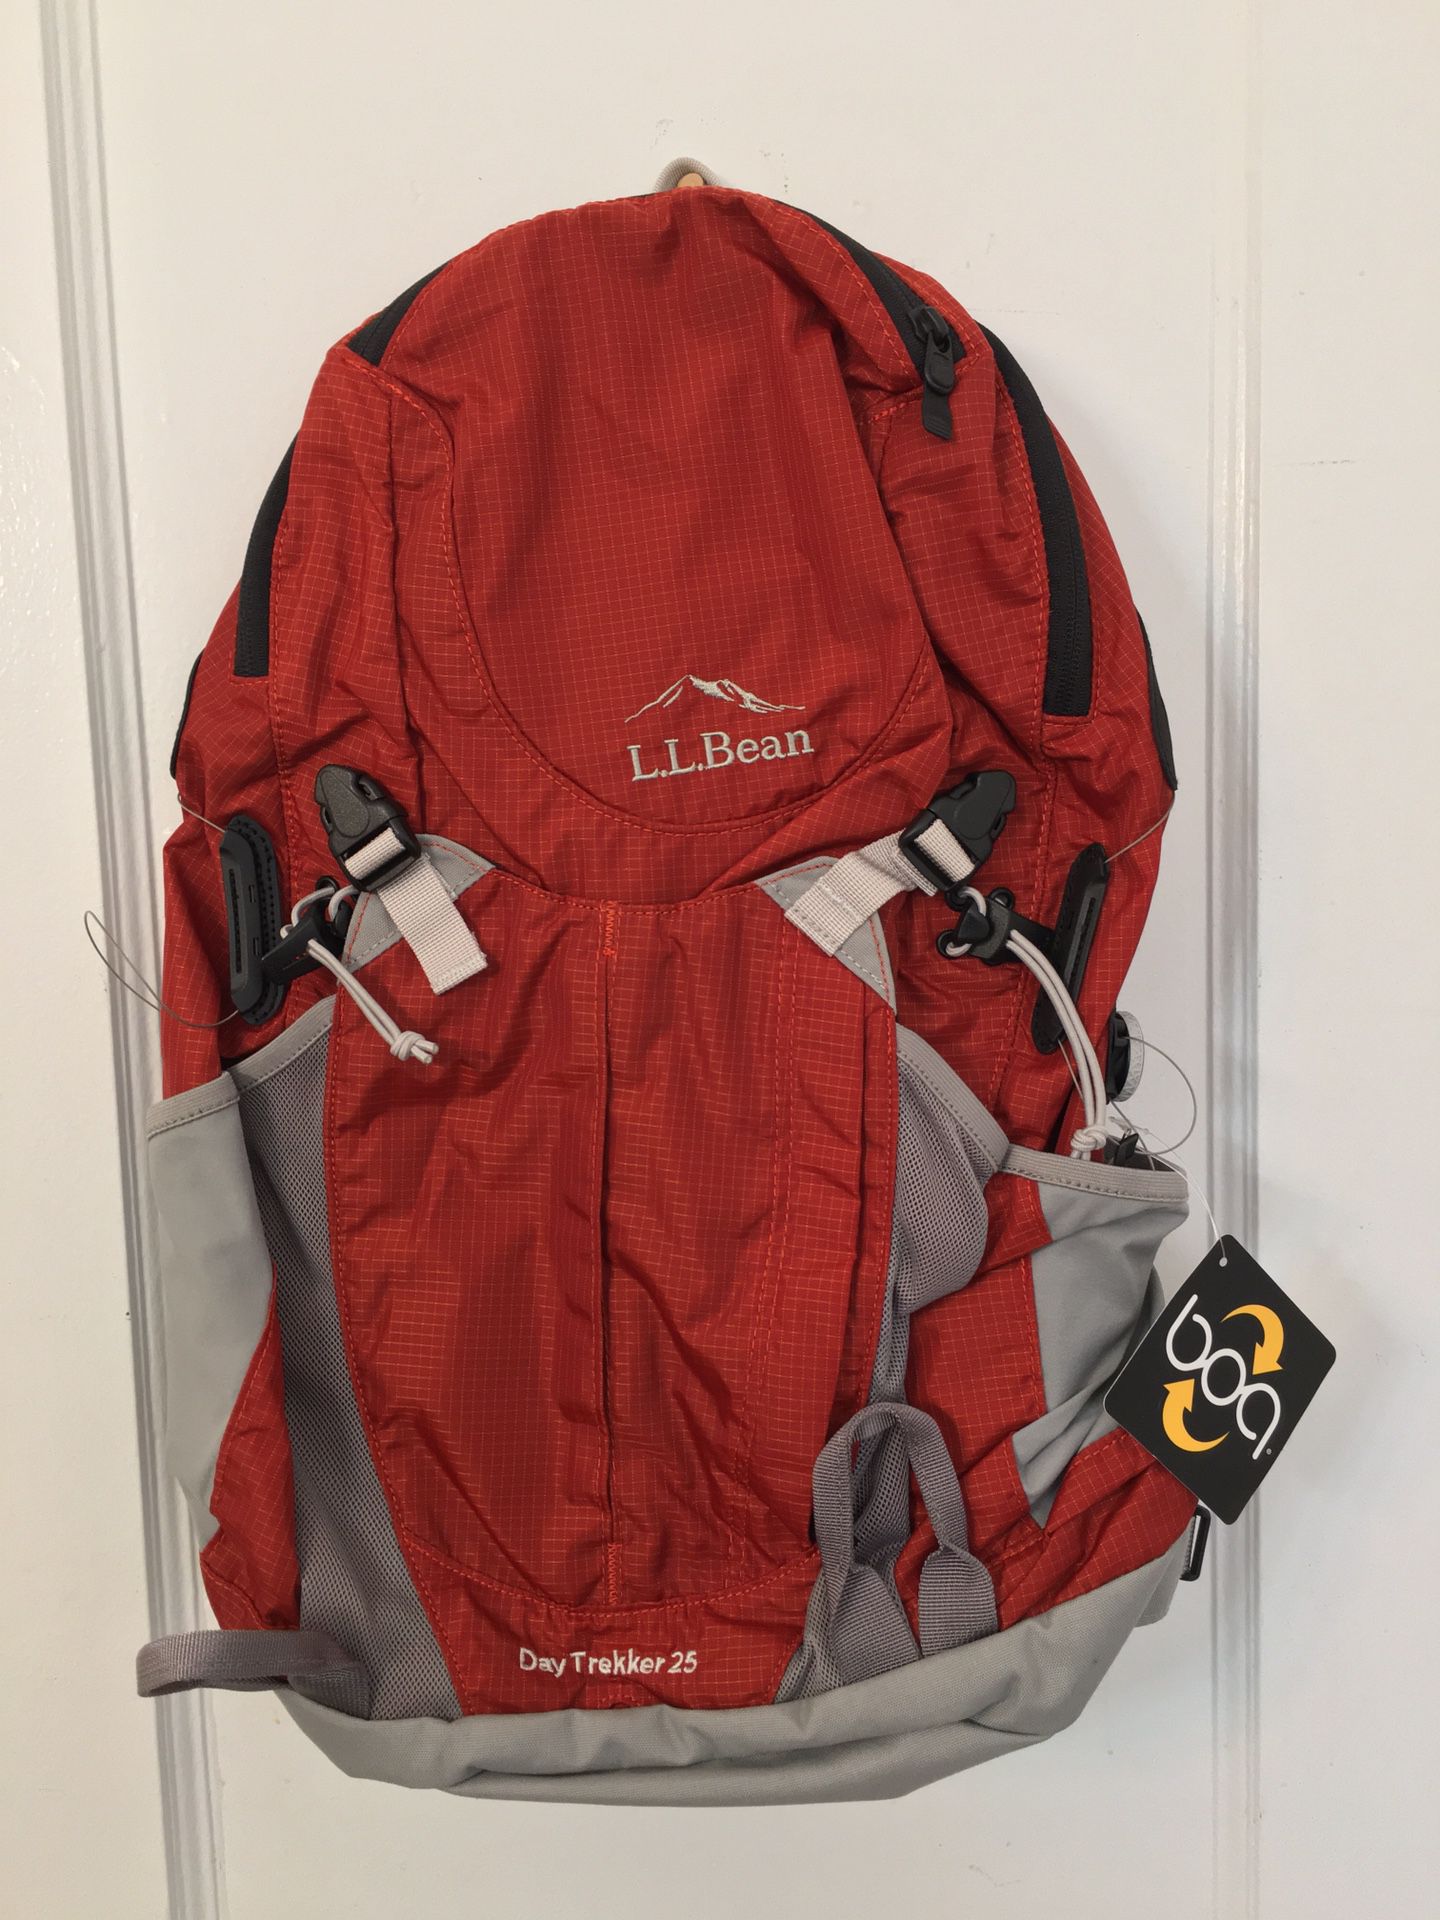  L.L Bean day trekker 25 Hiking backpack